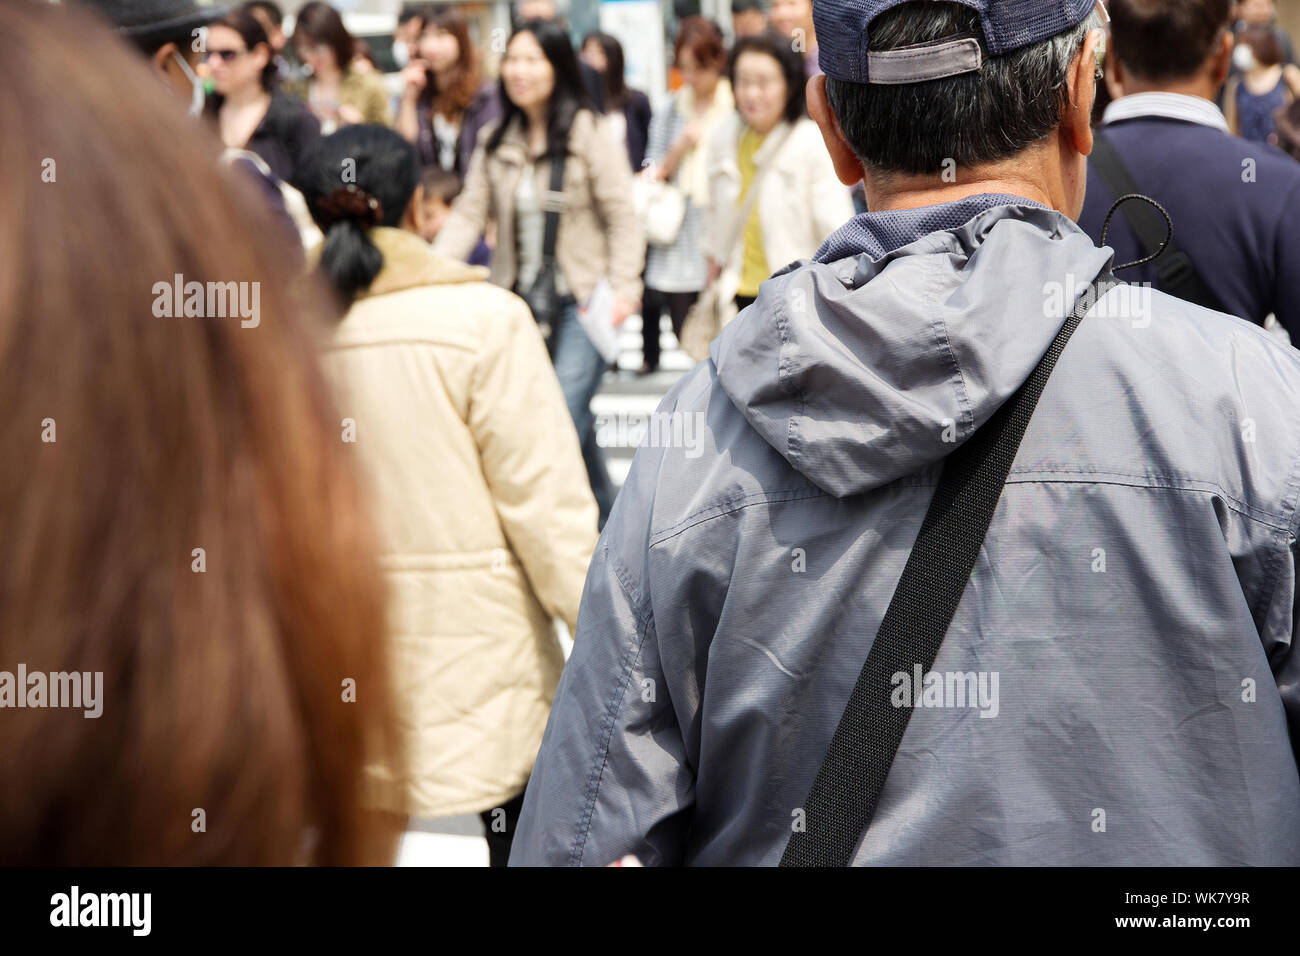 Fußgänger überqueren Sie an der Kreuzung Shibuya Stockfoto